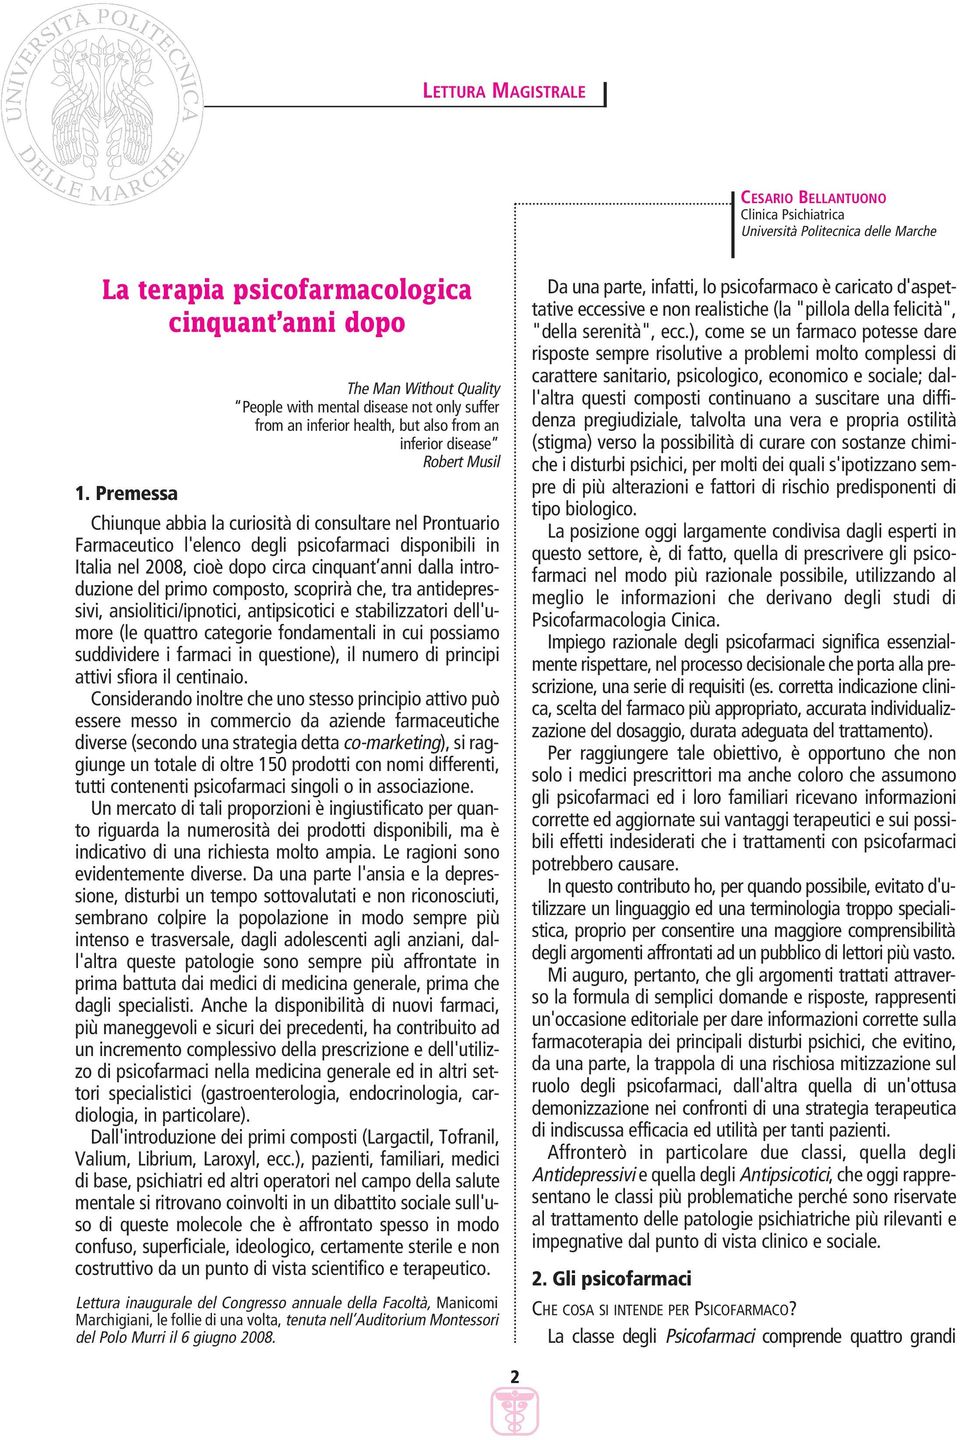 Prontuario Farmaceutico l'elenco degli psicofarmaci disponibili in Italia nel 2008, cioè dopo circa cinquant anni dalla introduzione del primo composto, scoprirà che, tra antidepressivi,